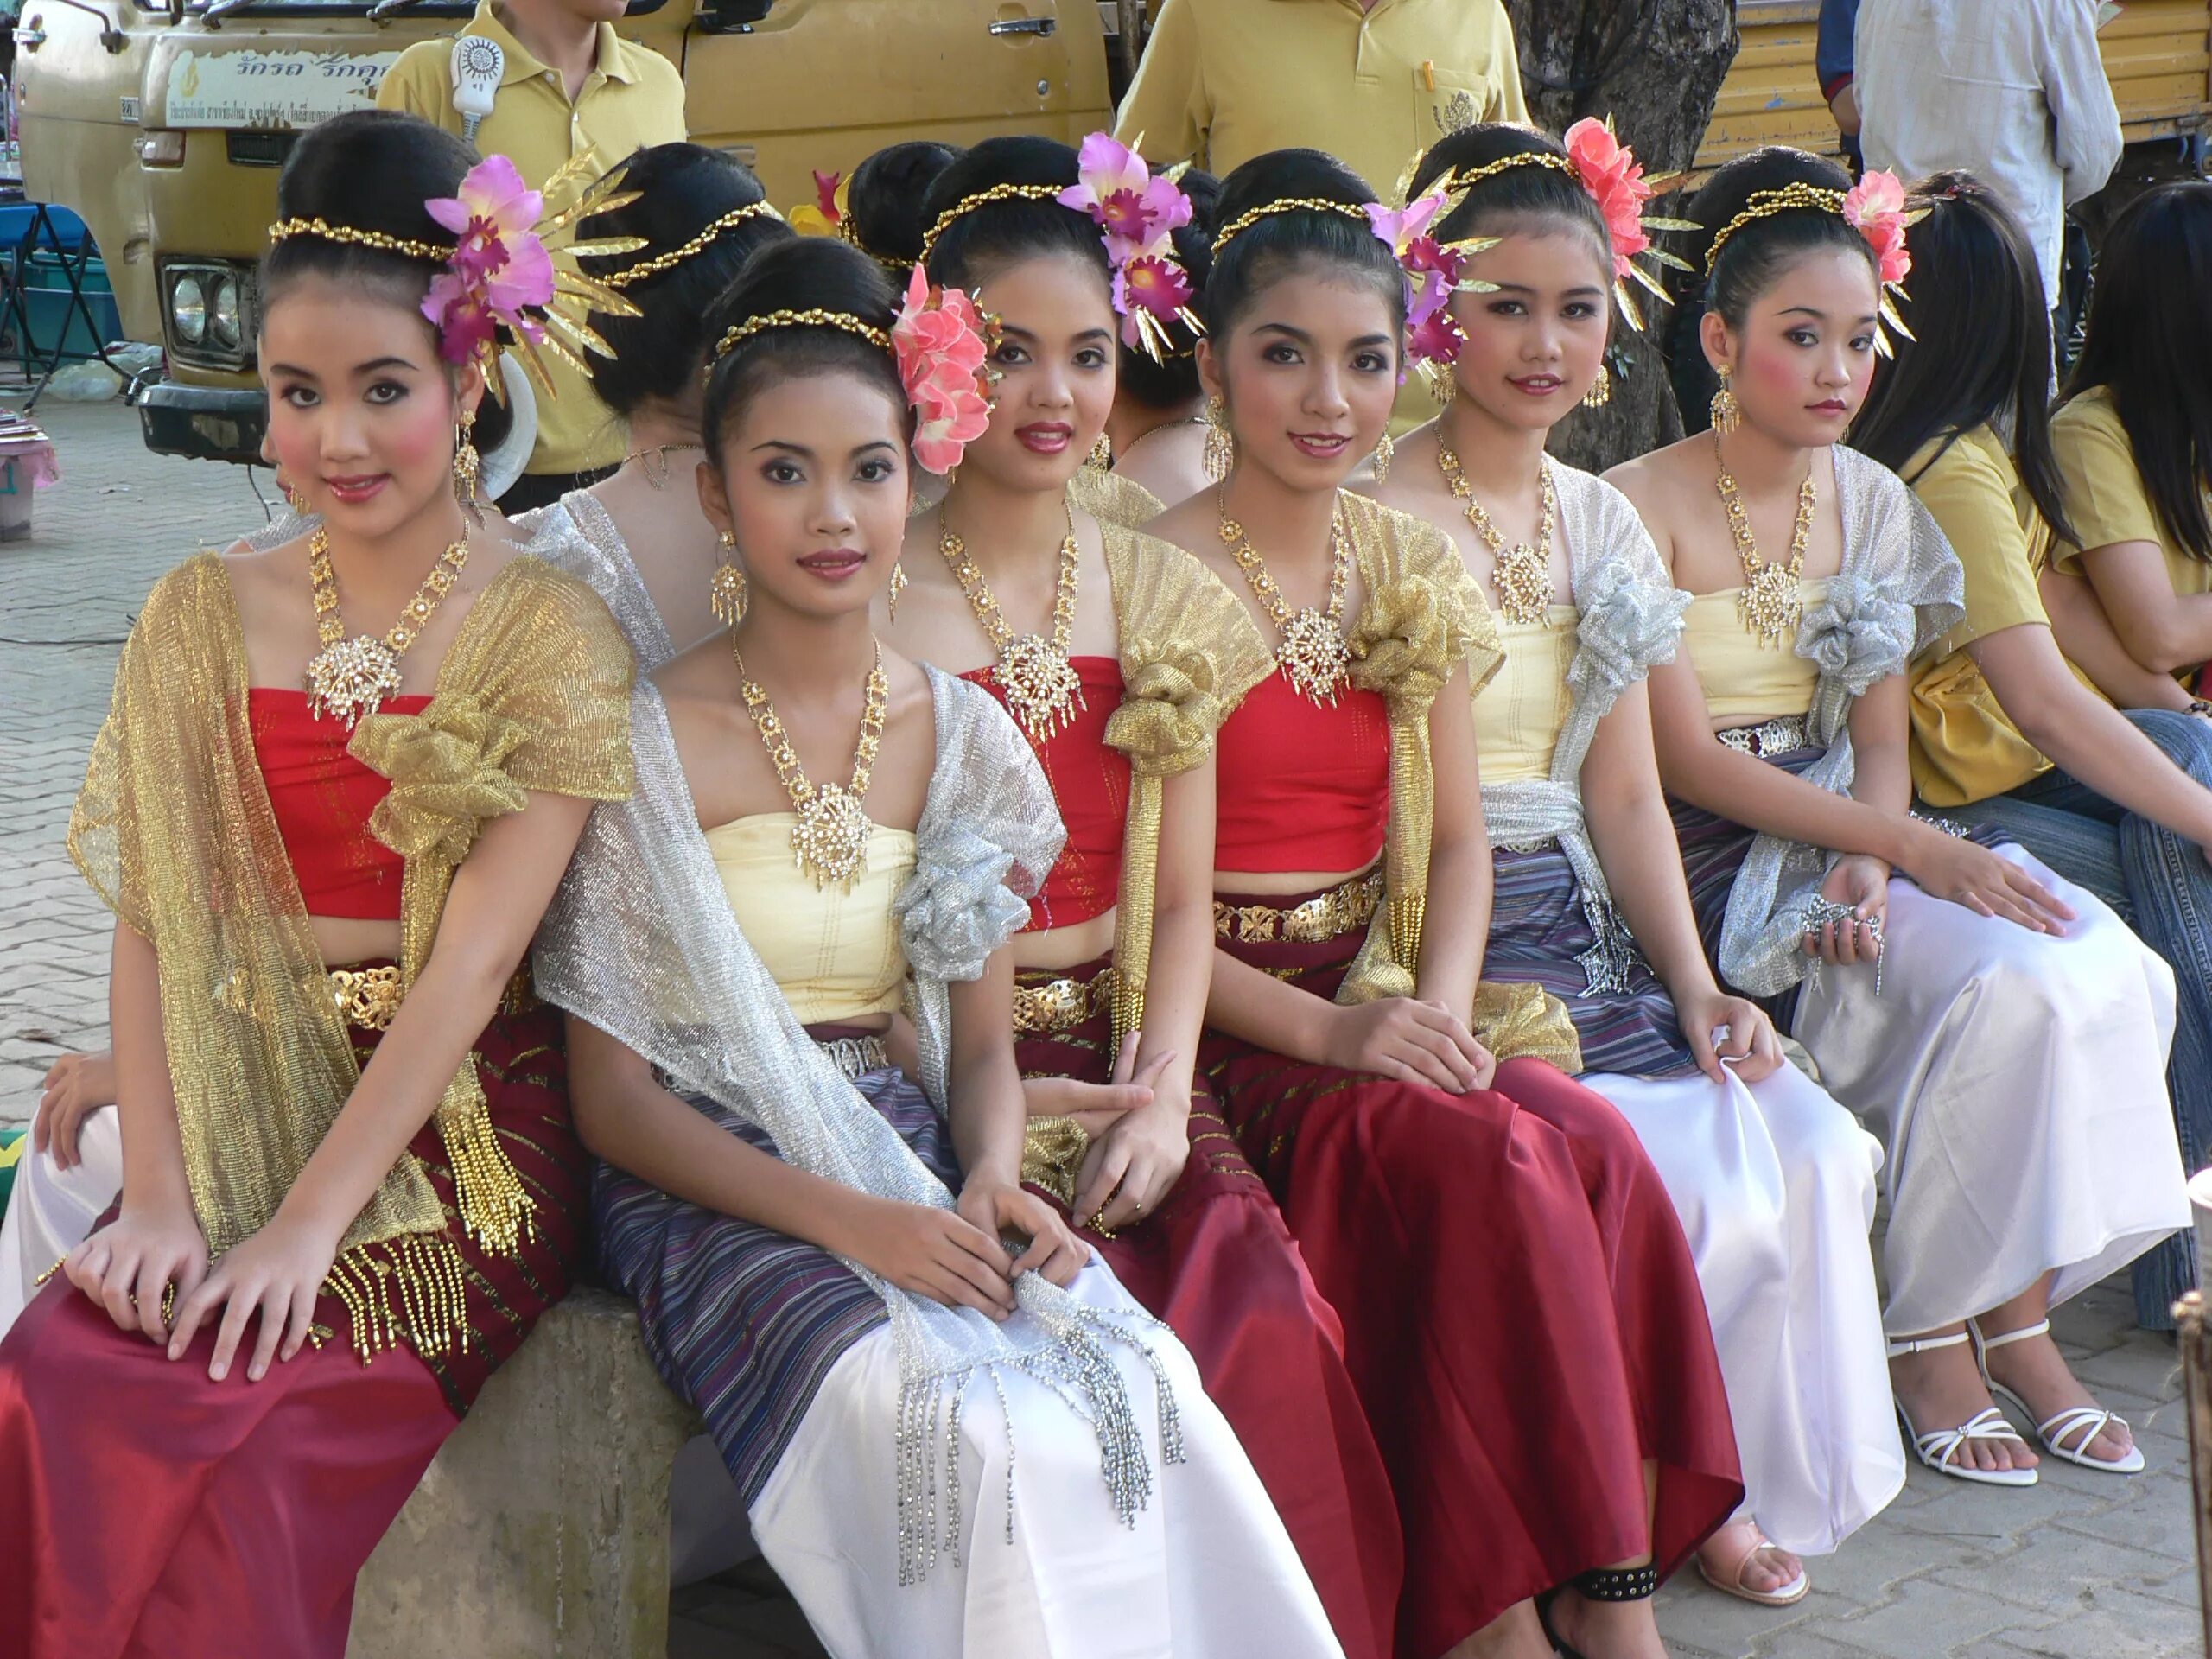 Тайланд традиционный костюм. Национальная одежда Тайланда. Тайская девушка в национальном костюме. Женщины Тайланда.